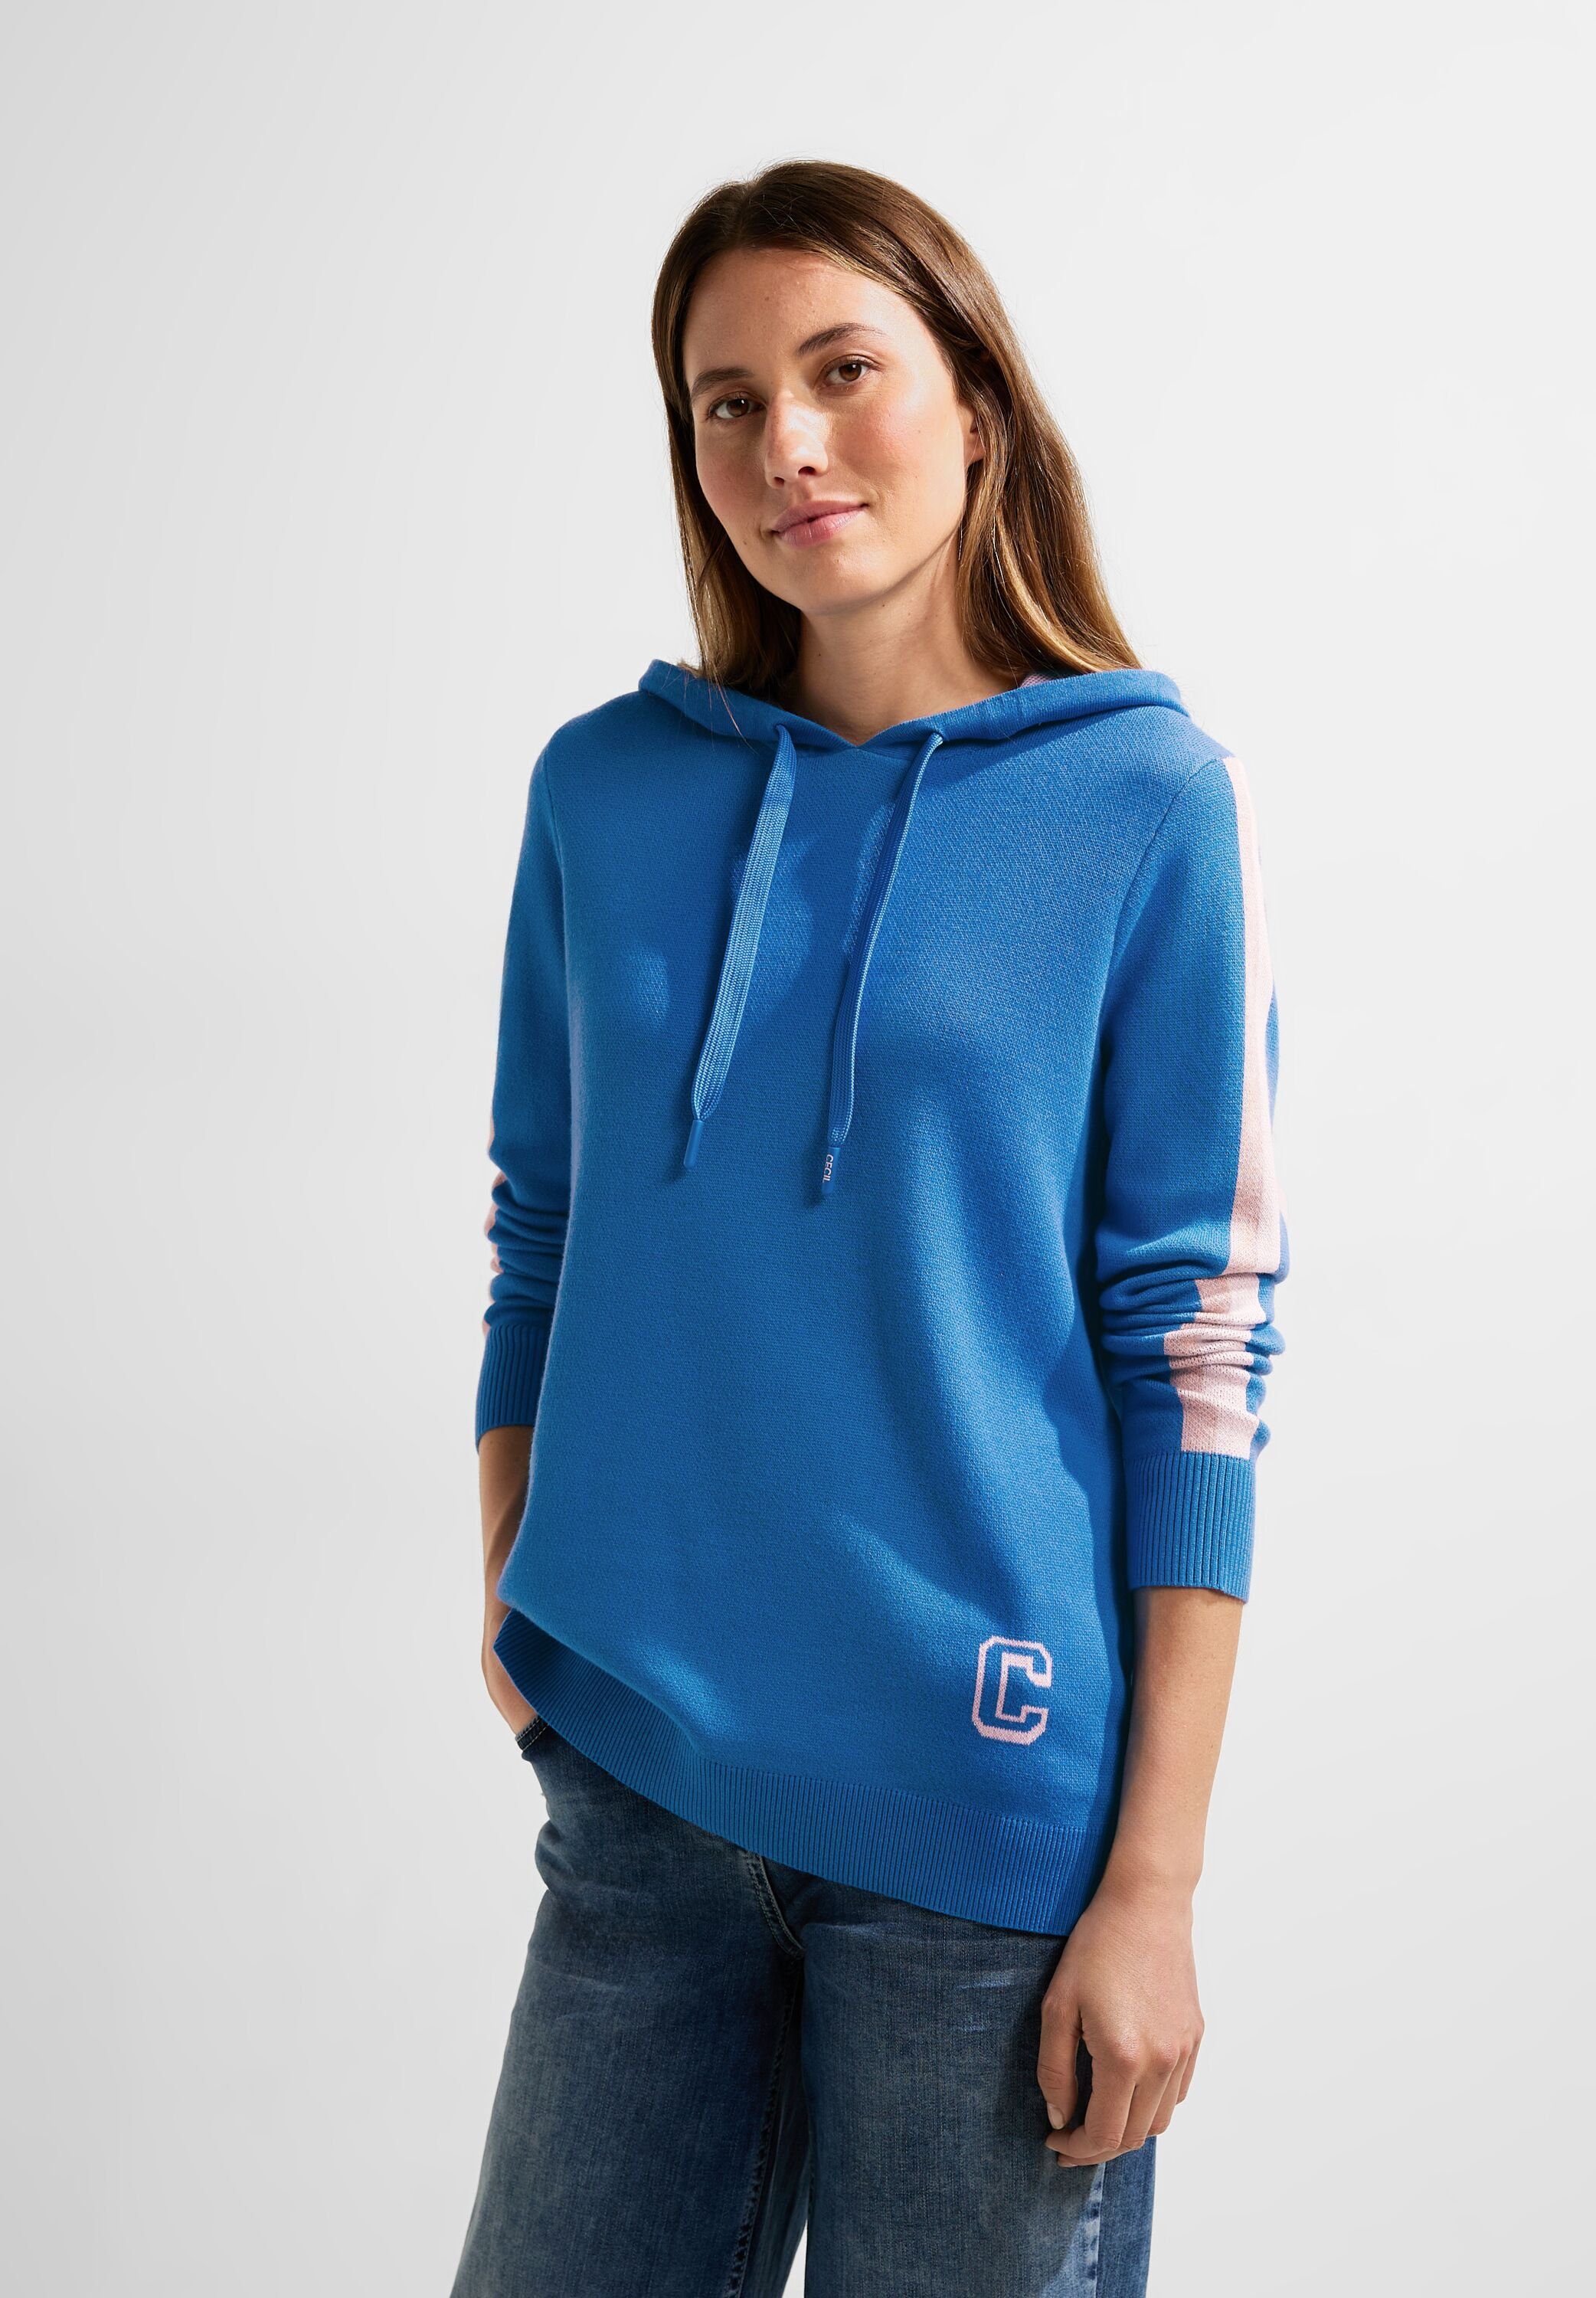 Cecil Blaue Sweatshirts online für Damen kaufen | OTTO